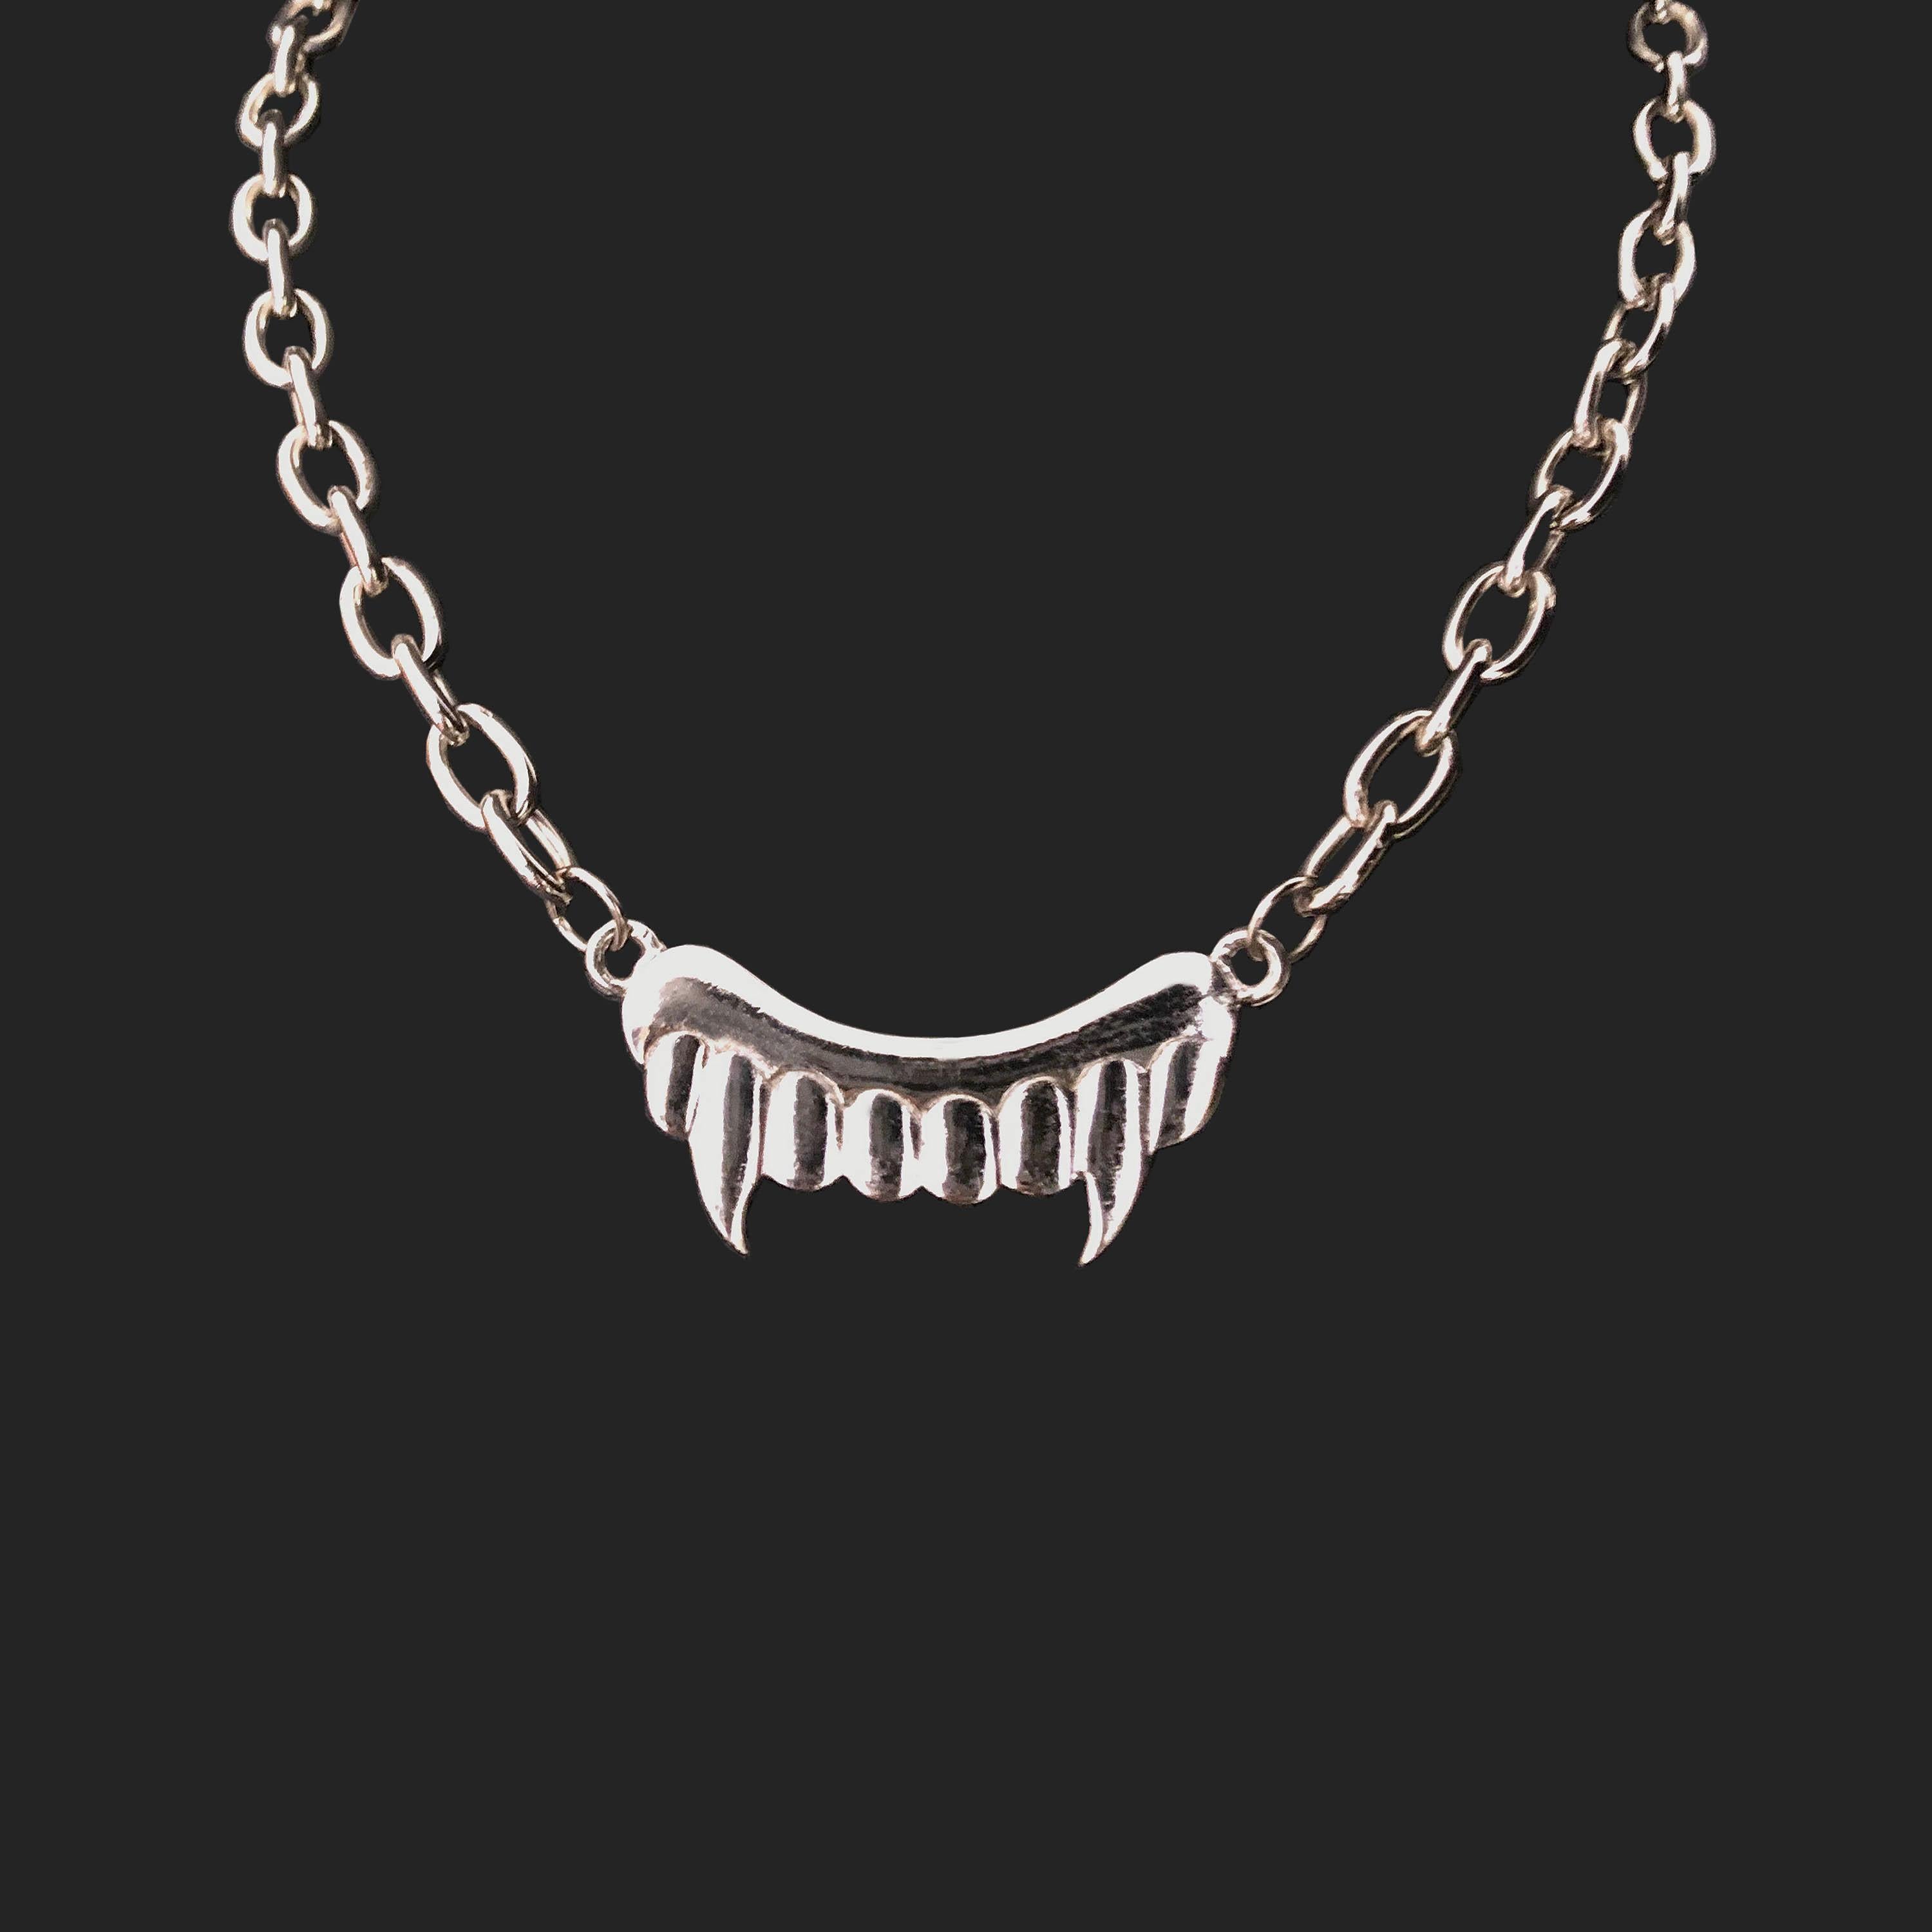 Product Details: JC de Castelbajac - Silver ‘Fang’ Necklace - 1990s Vintage - Chunky Chain - ‘JC de Castelbajac Logo’ / Back Pendant - Secure Twist / Back Fasten 
Era: c.1990
Label: JC de Castelbajac
Fabric Content: Silver Metal
Necklace Total